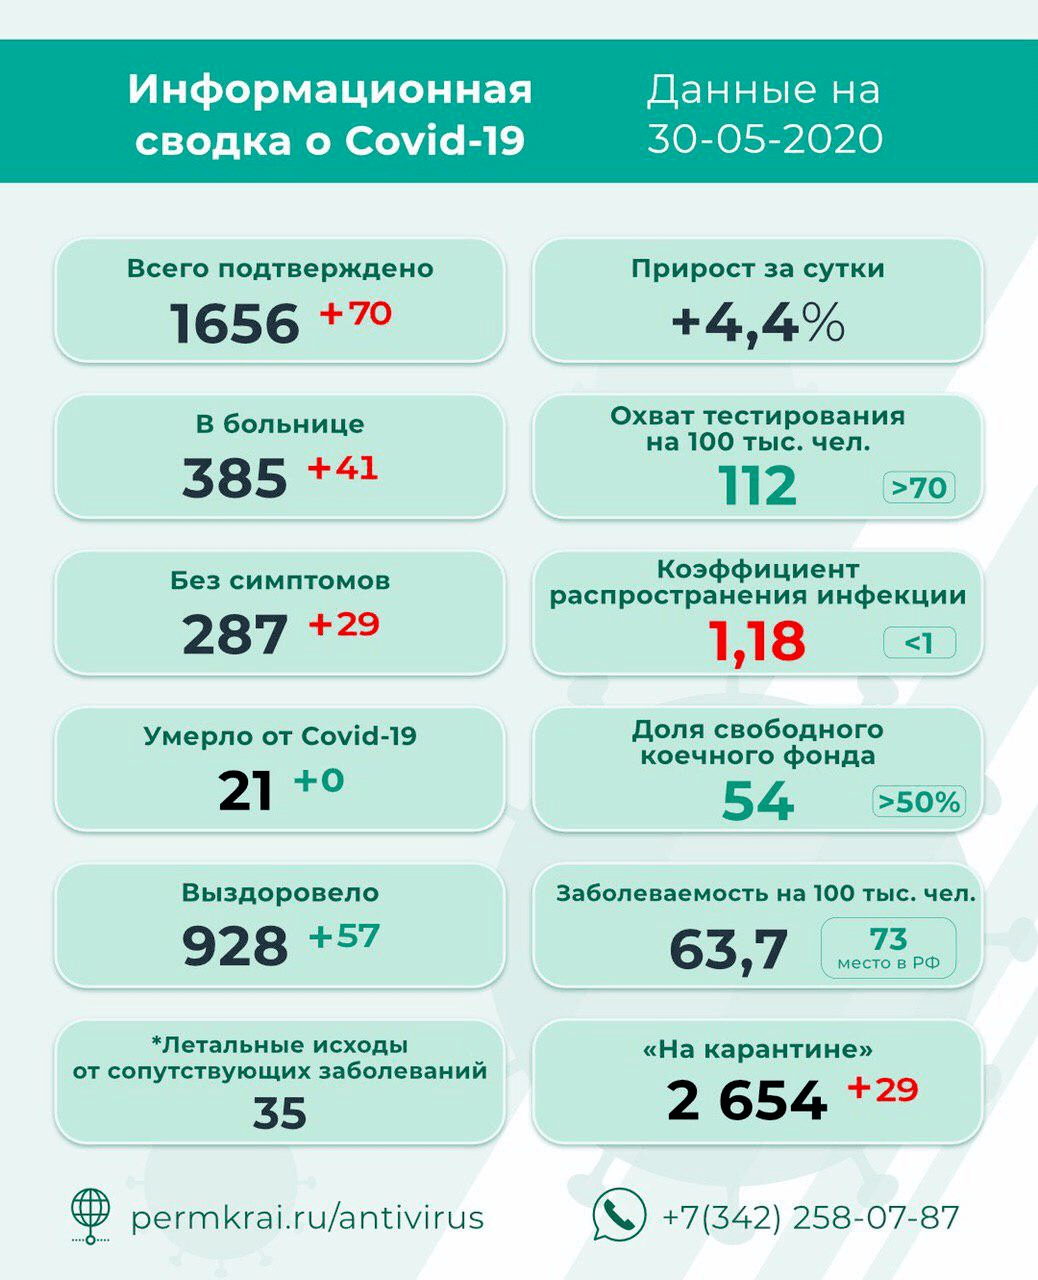 Коронавирус в Пермском крае поставил локальный рекорд Медики зафиксировали 70 новых случаев заболевания